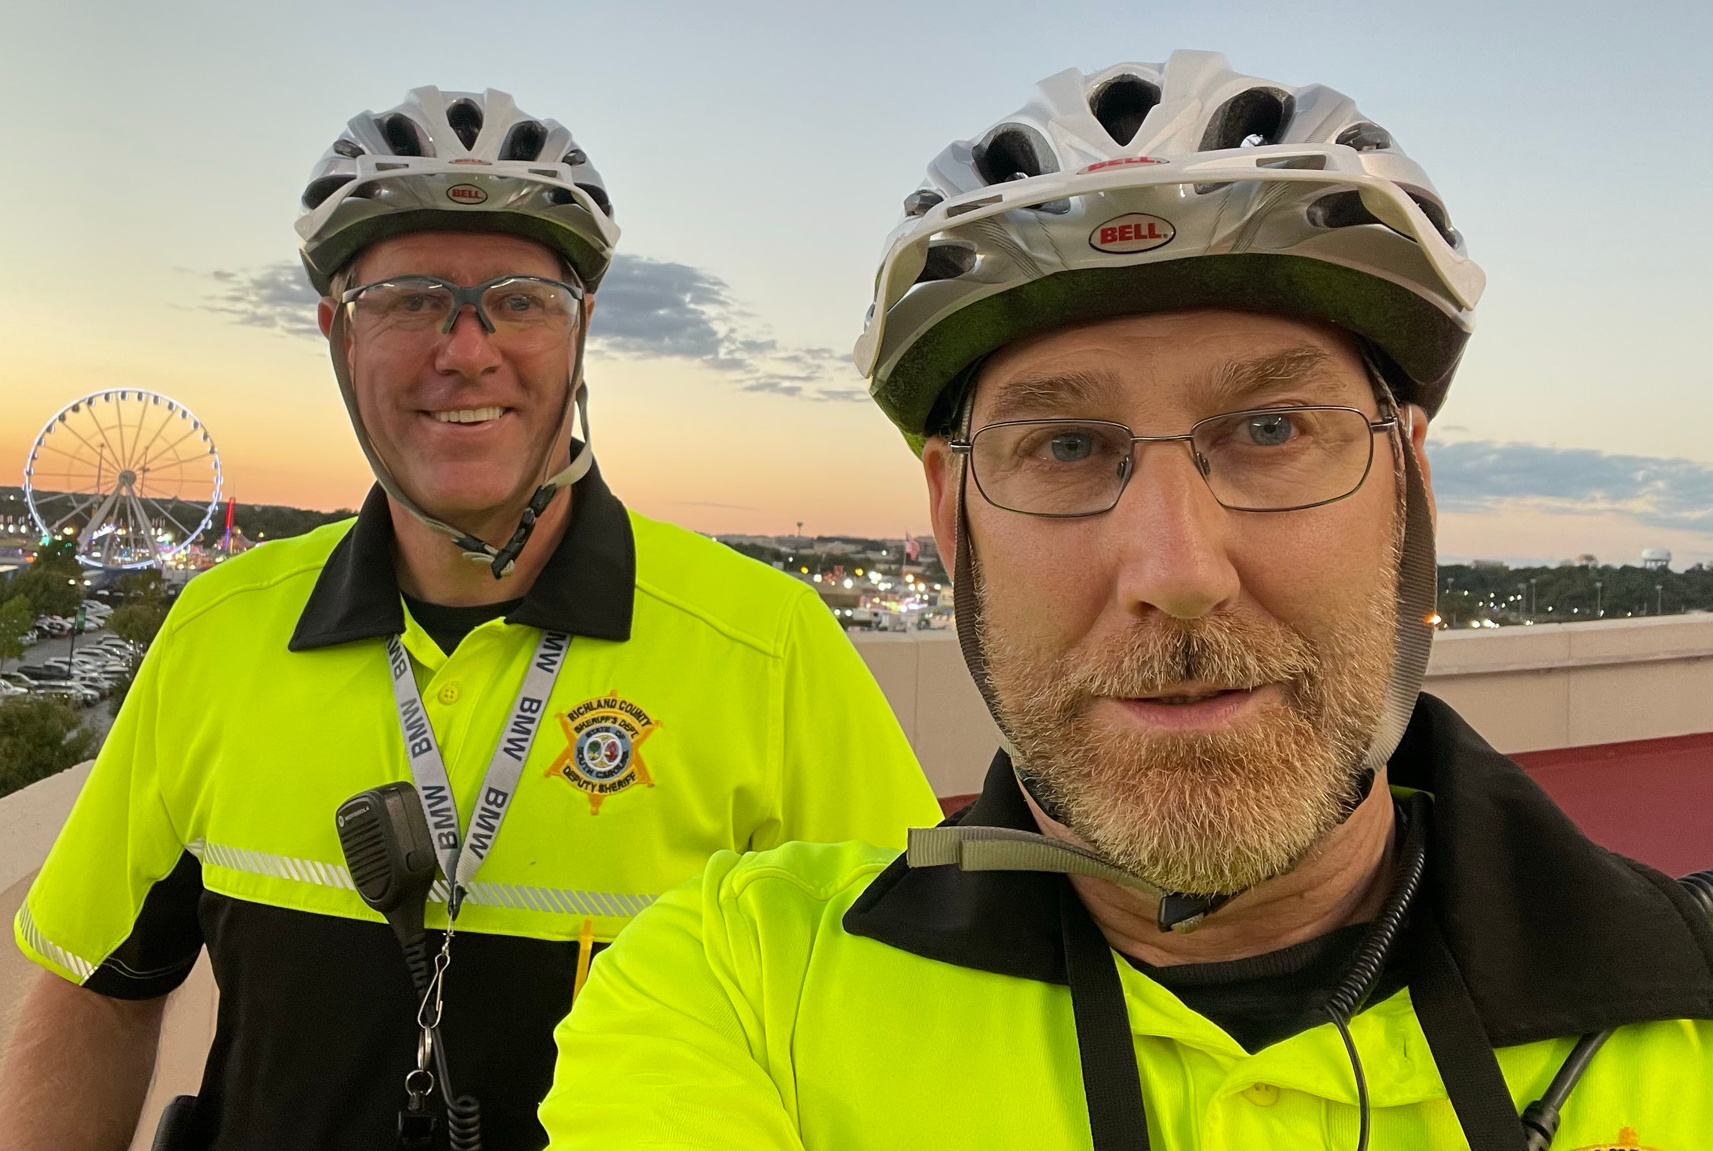 Two bike patrol officers